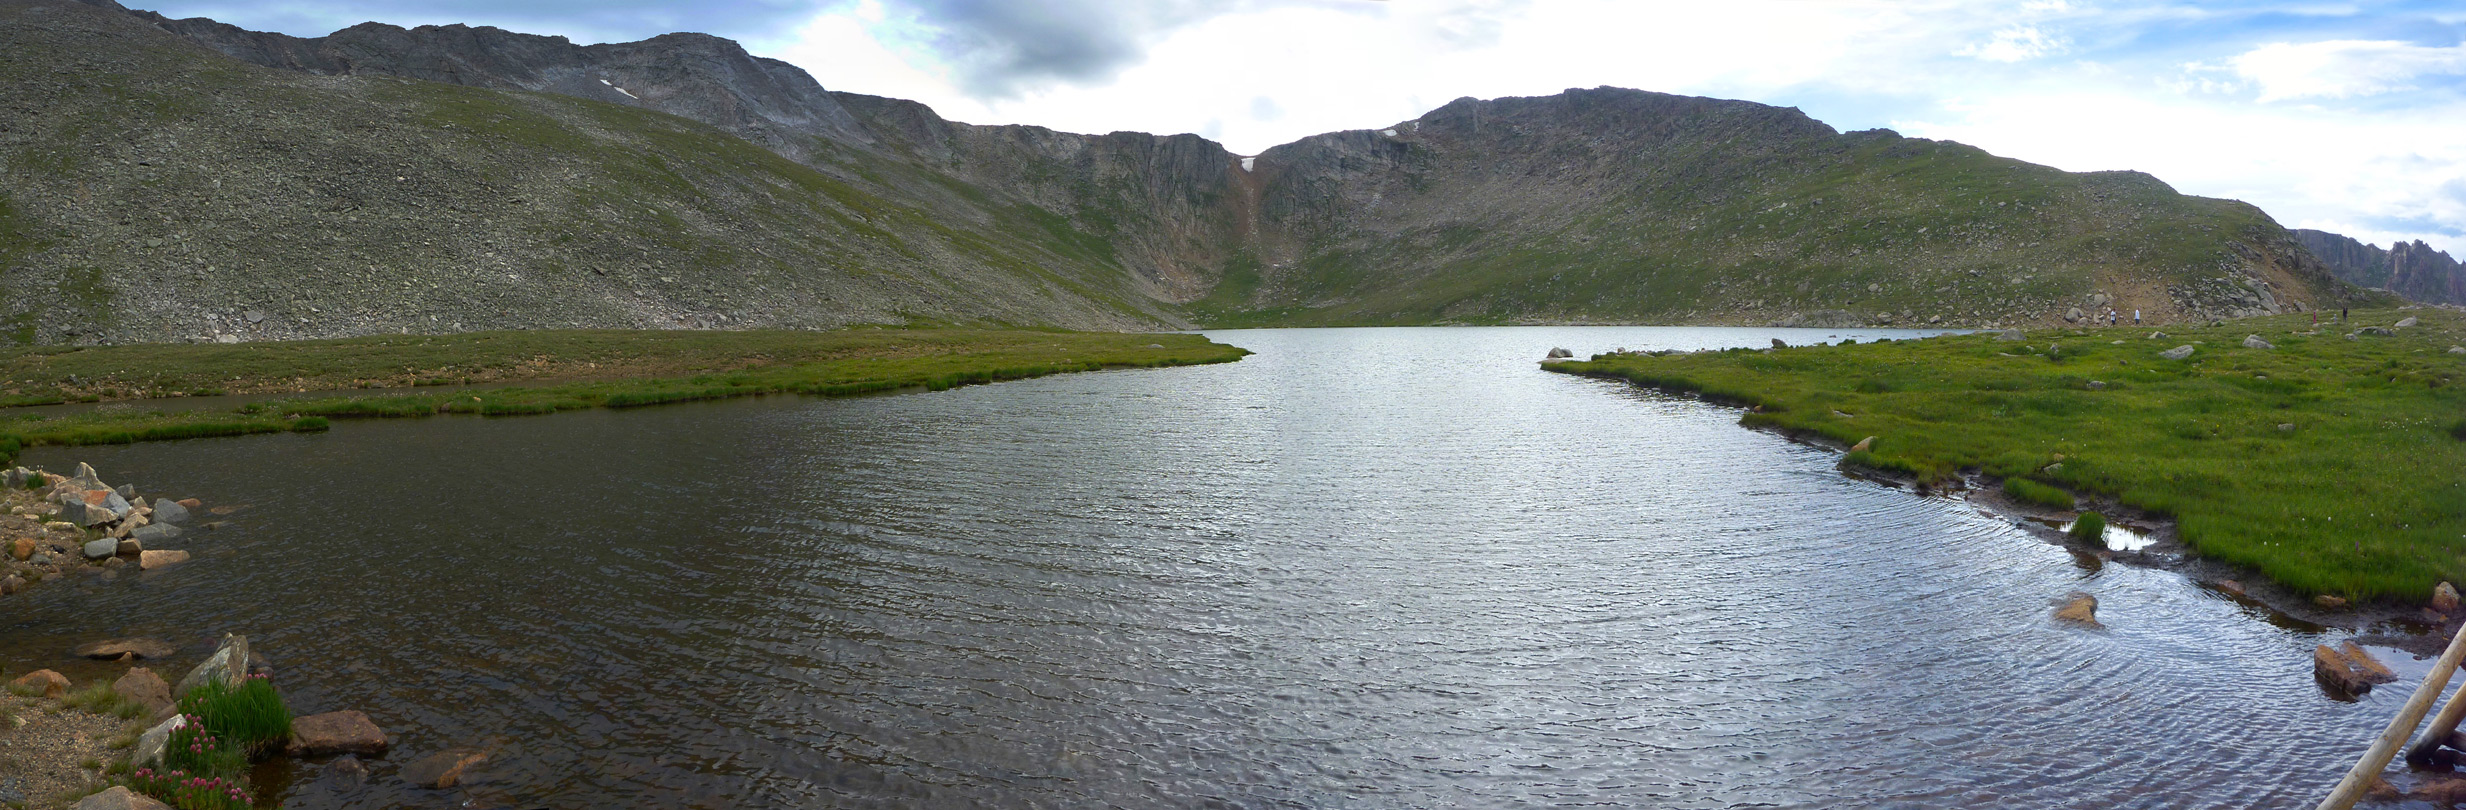 Panorama of Summit Lake